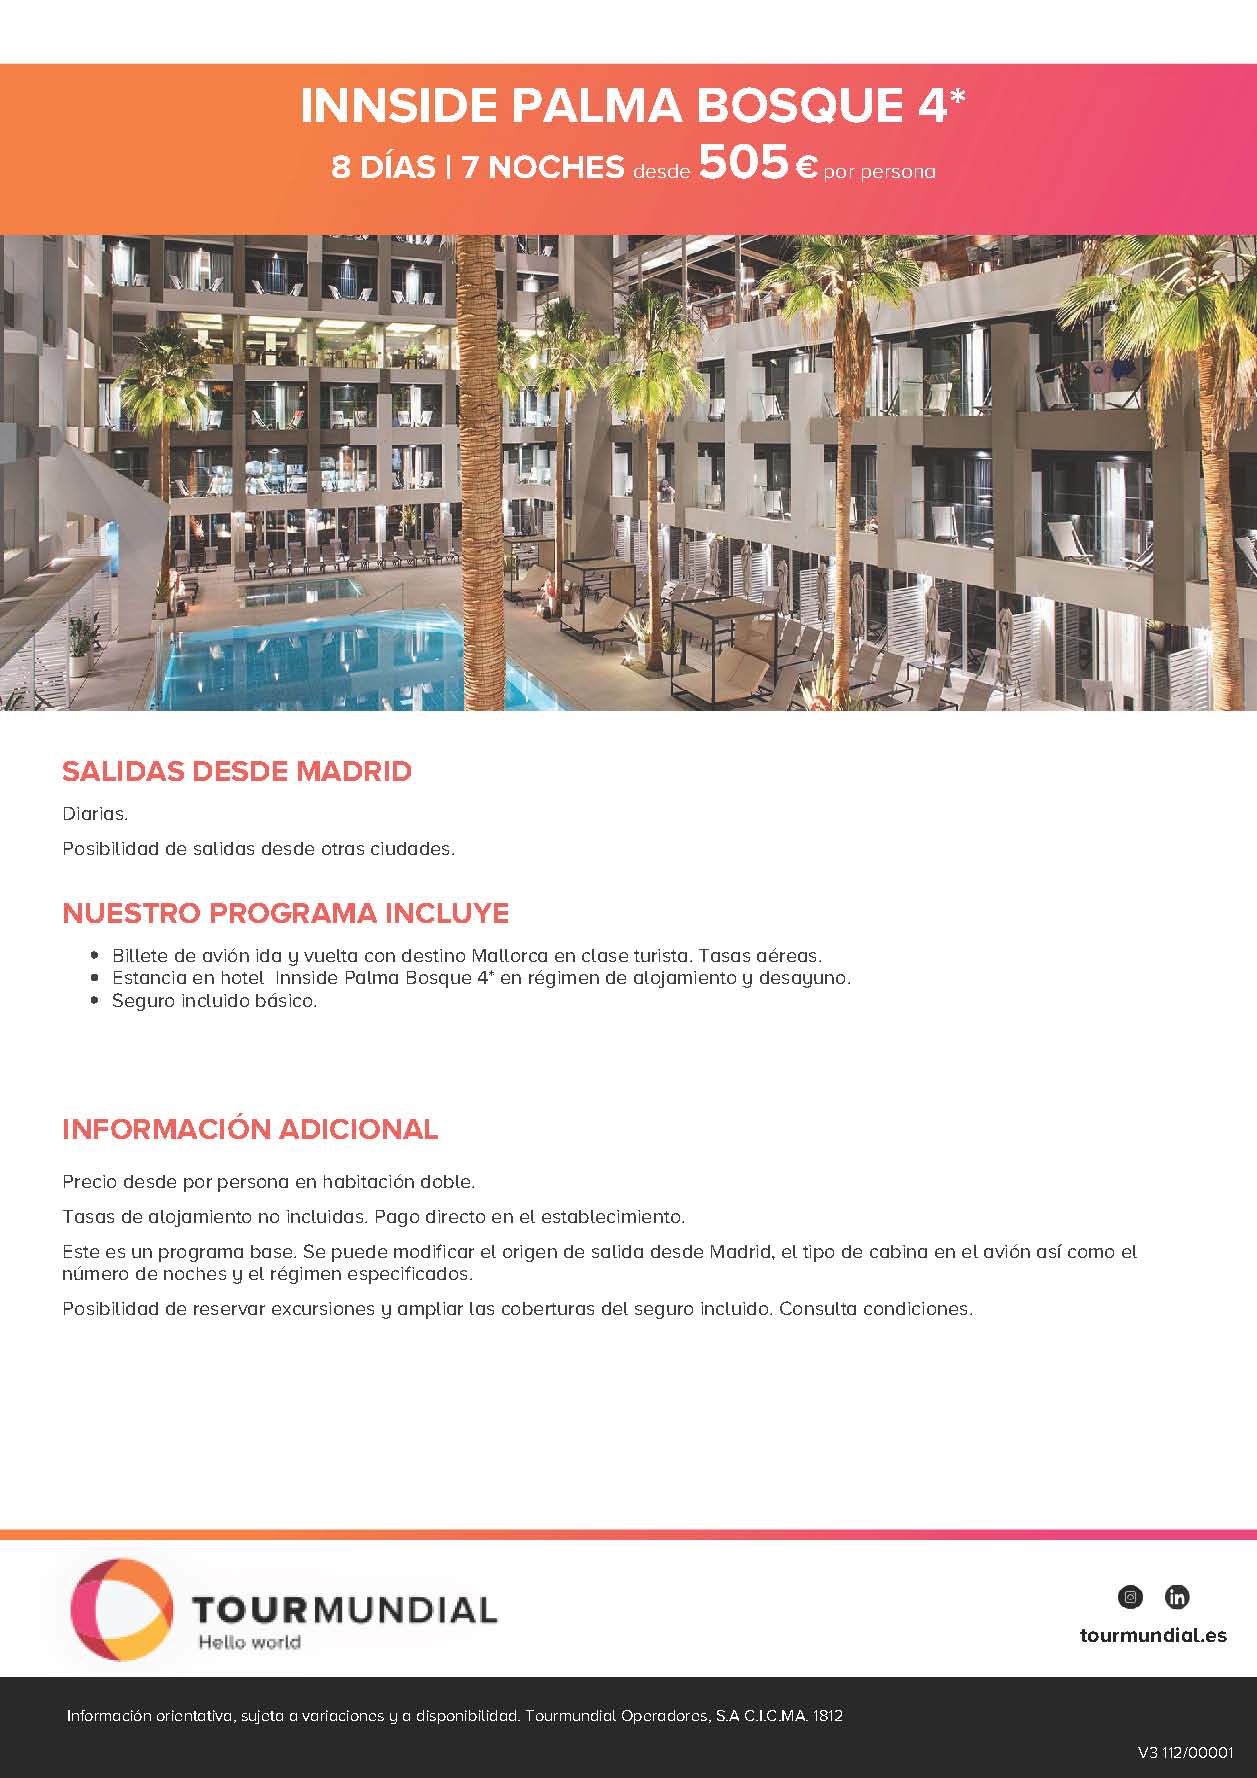 Oferta Tourmundial Vacaciones en Mallorca Hotel Innside Palma Bosque 2021 8 dias desde 505€